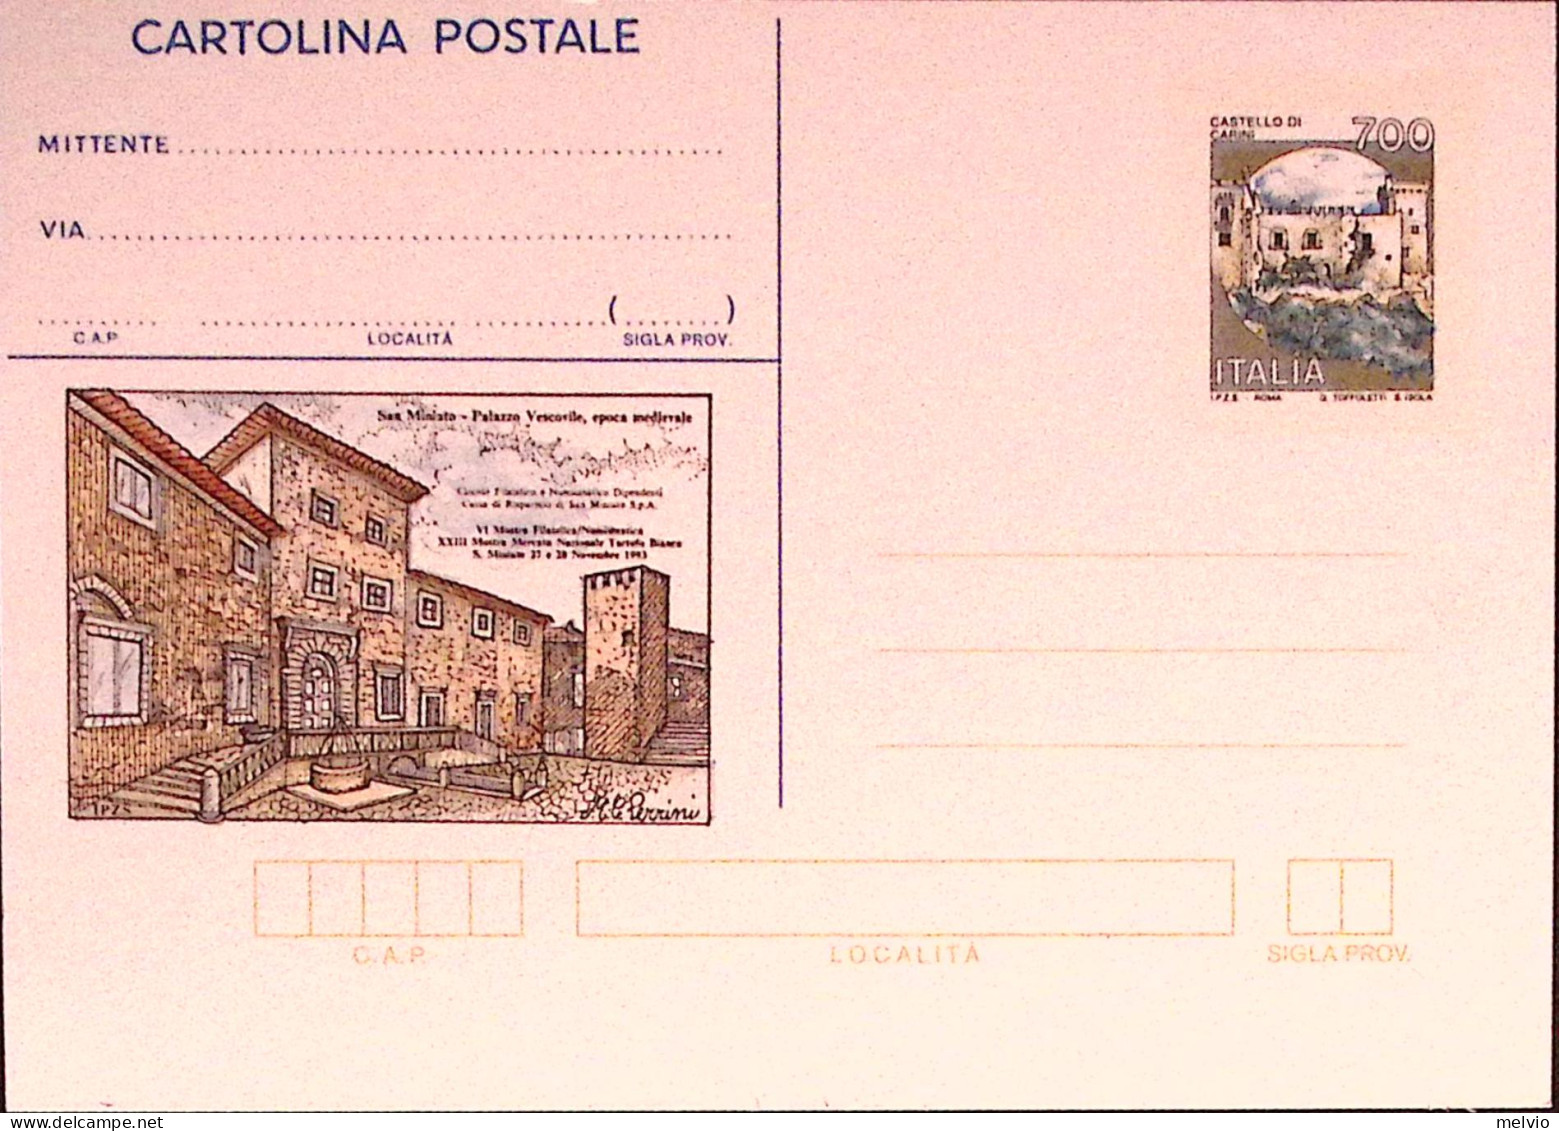 1993-SAN MINIATO Cartolina Postale IPZS Lire 700 Nuova - Stamped Stationery